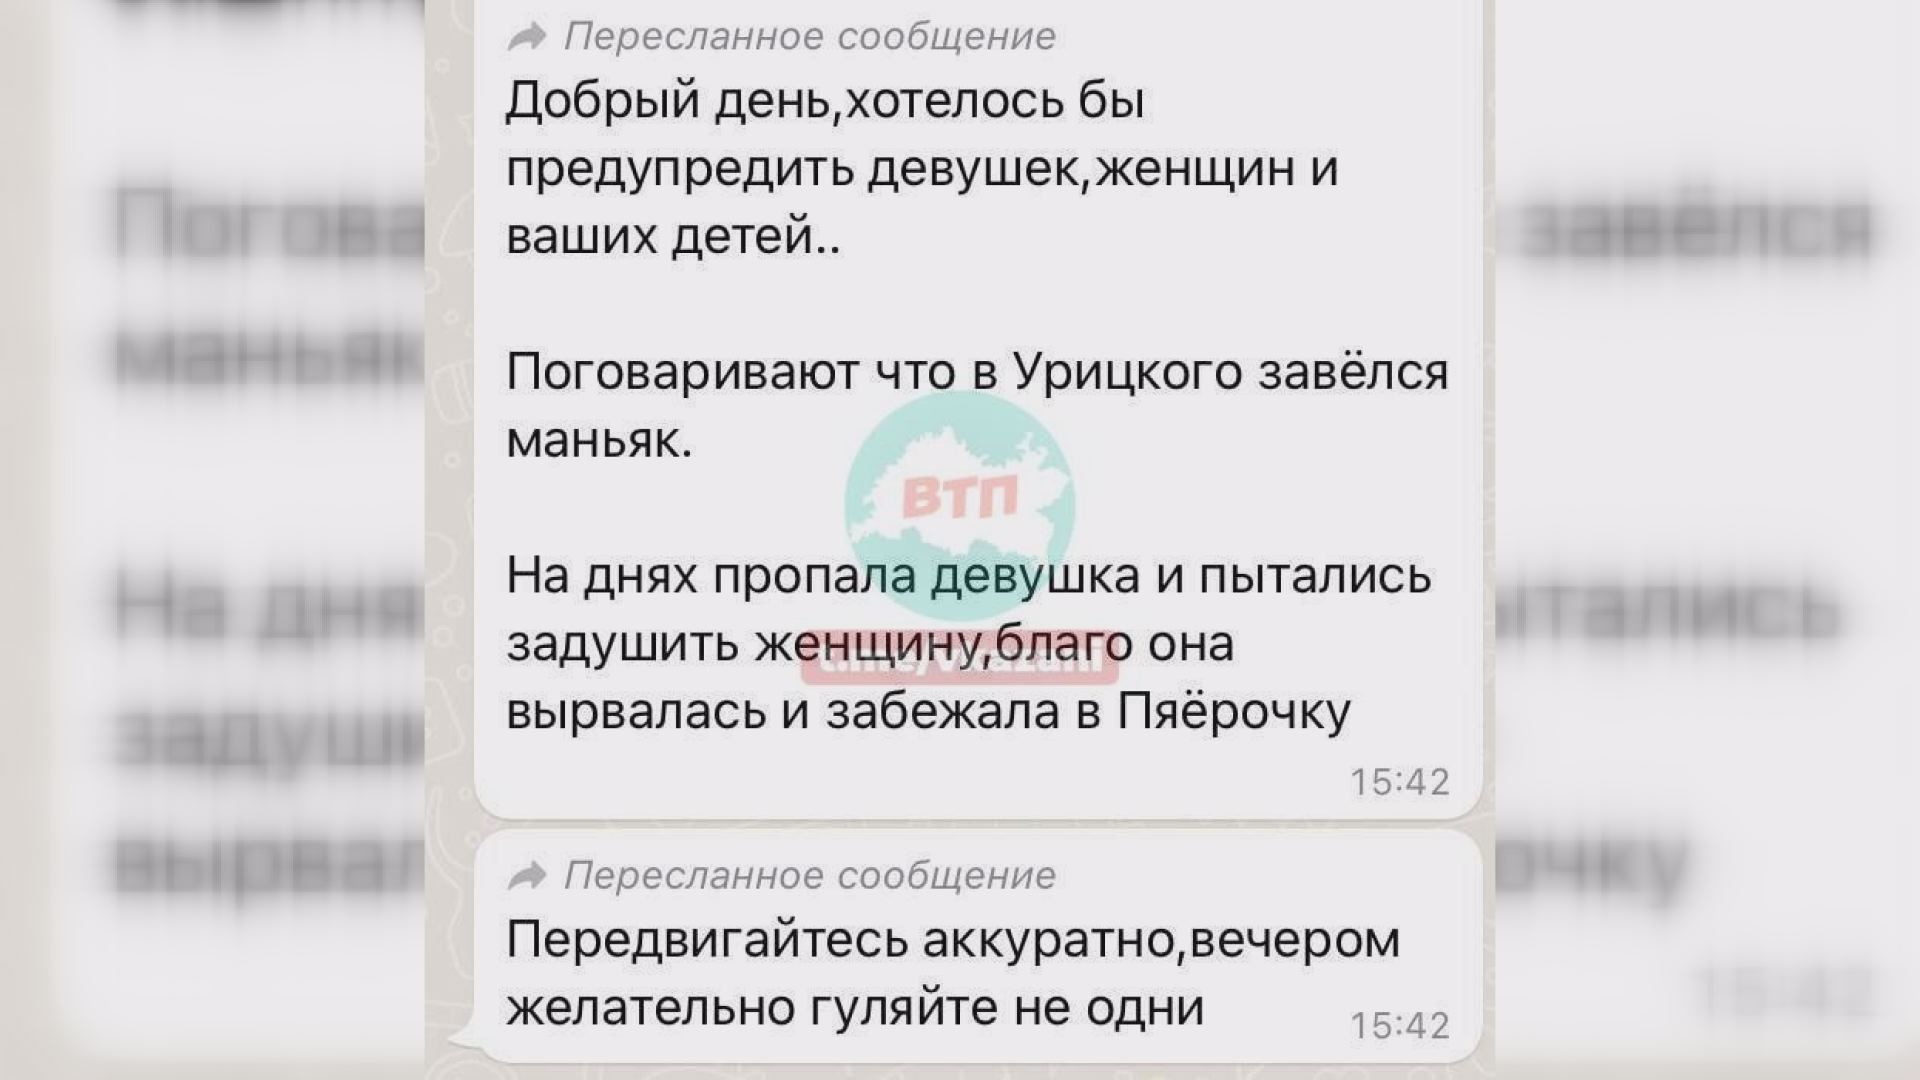 Соцсети: казанцы сообщают о появлении маньяка в парке Урицкого